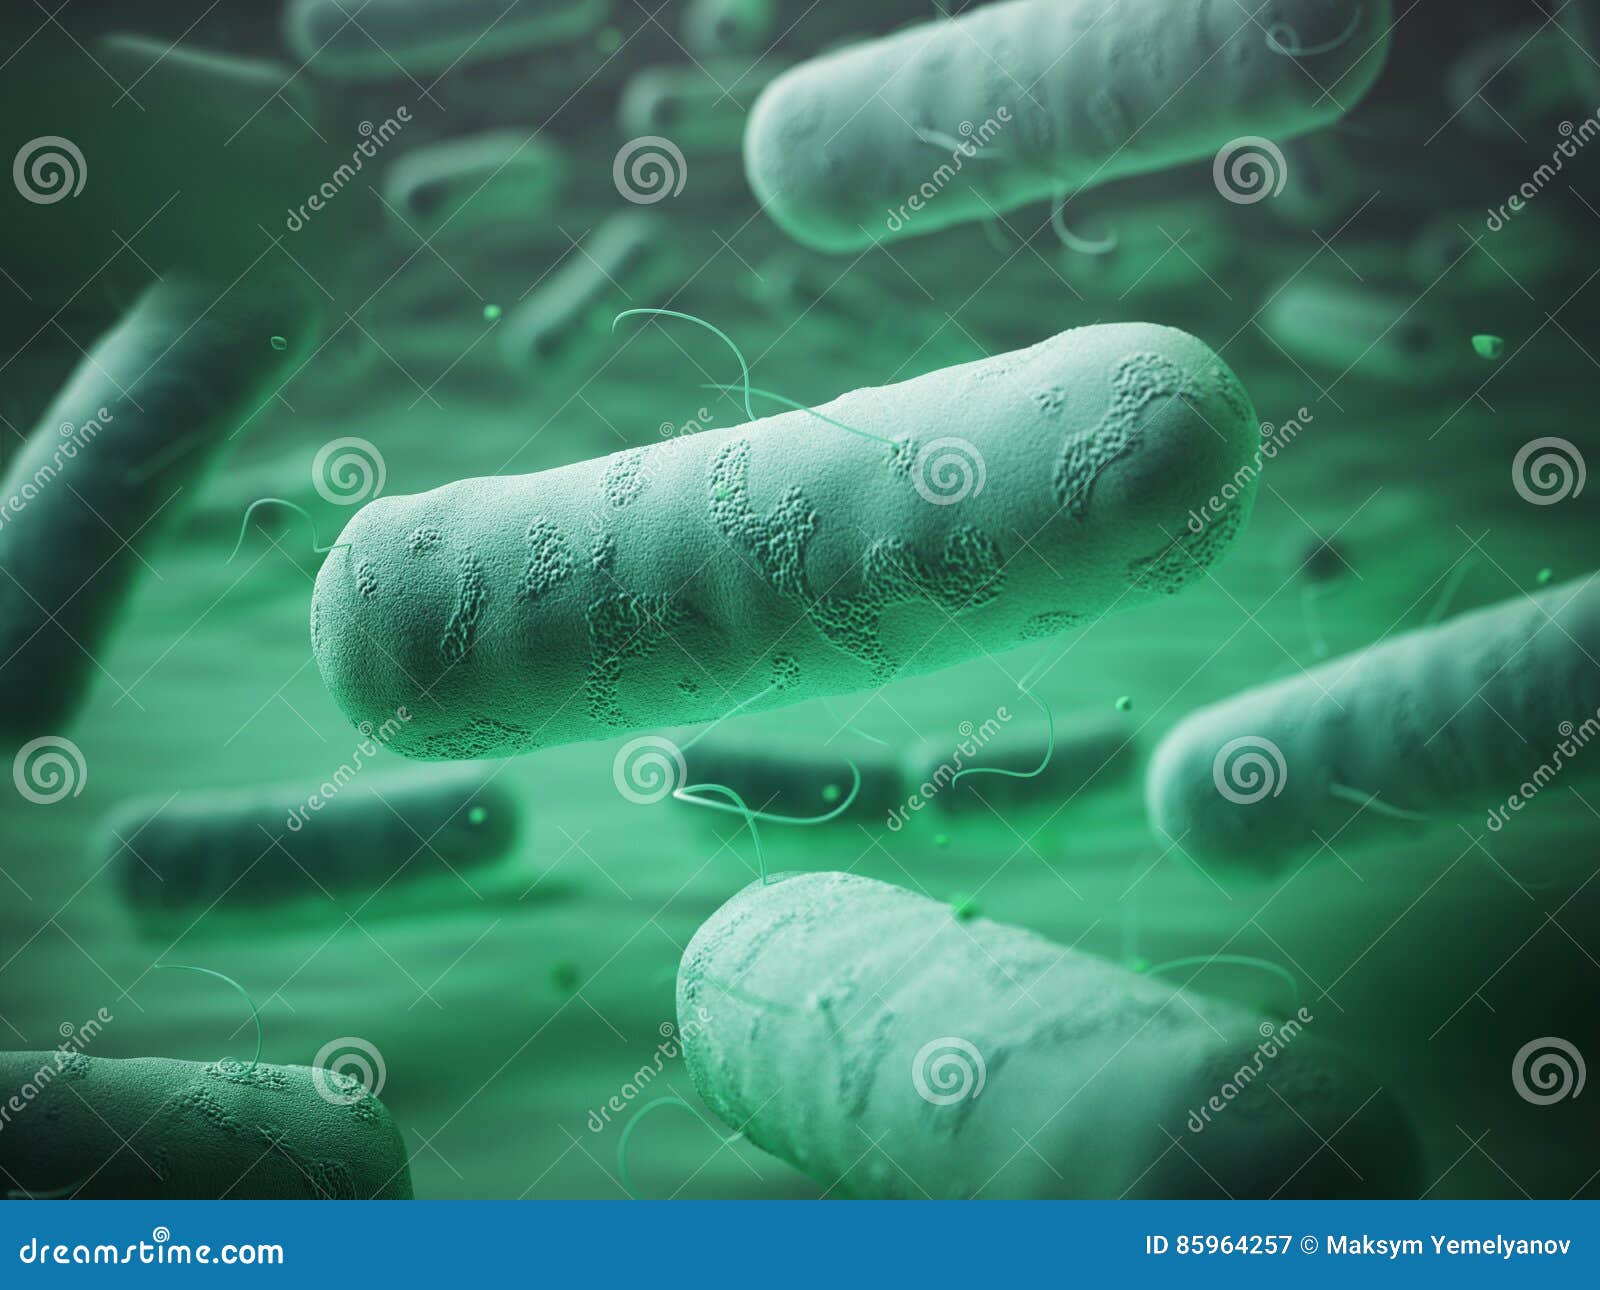 enterobacteriaceas. gram-negative bacterias escherichia coli, sa